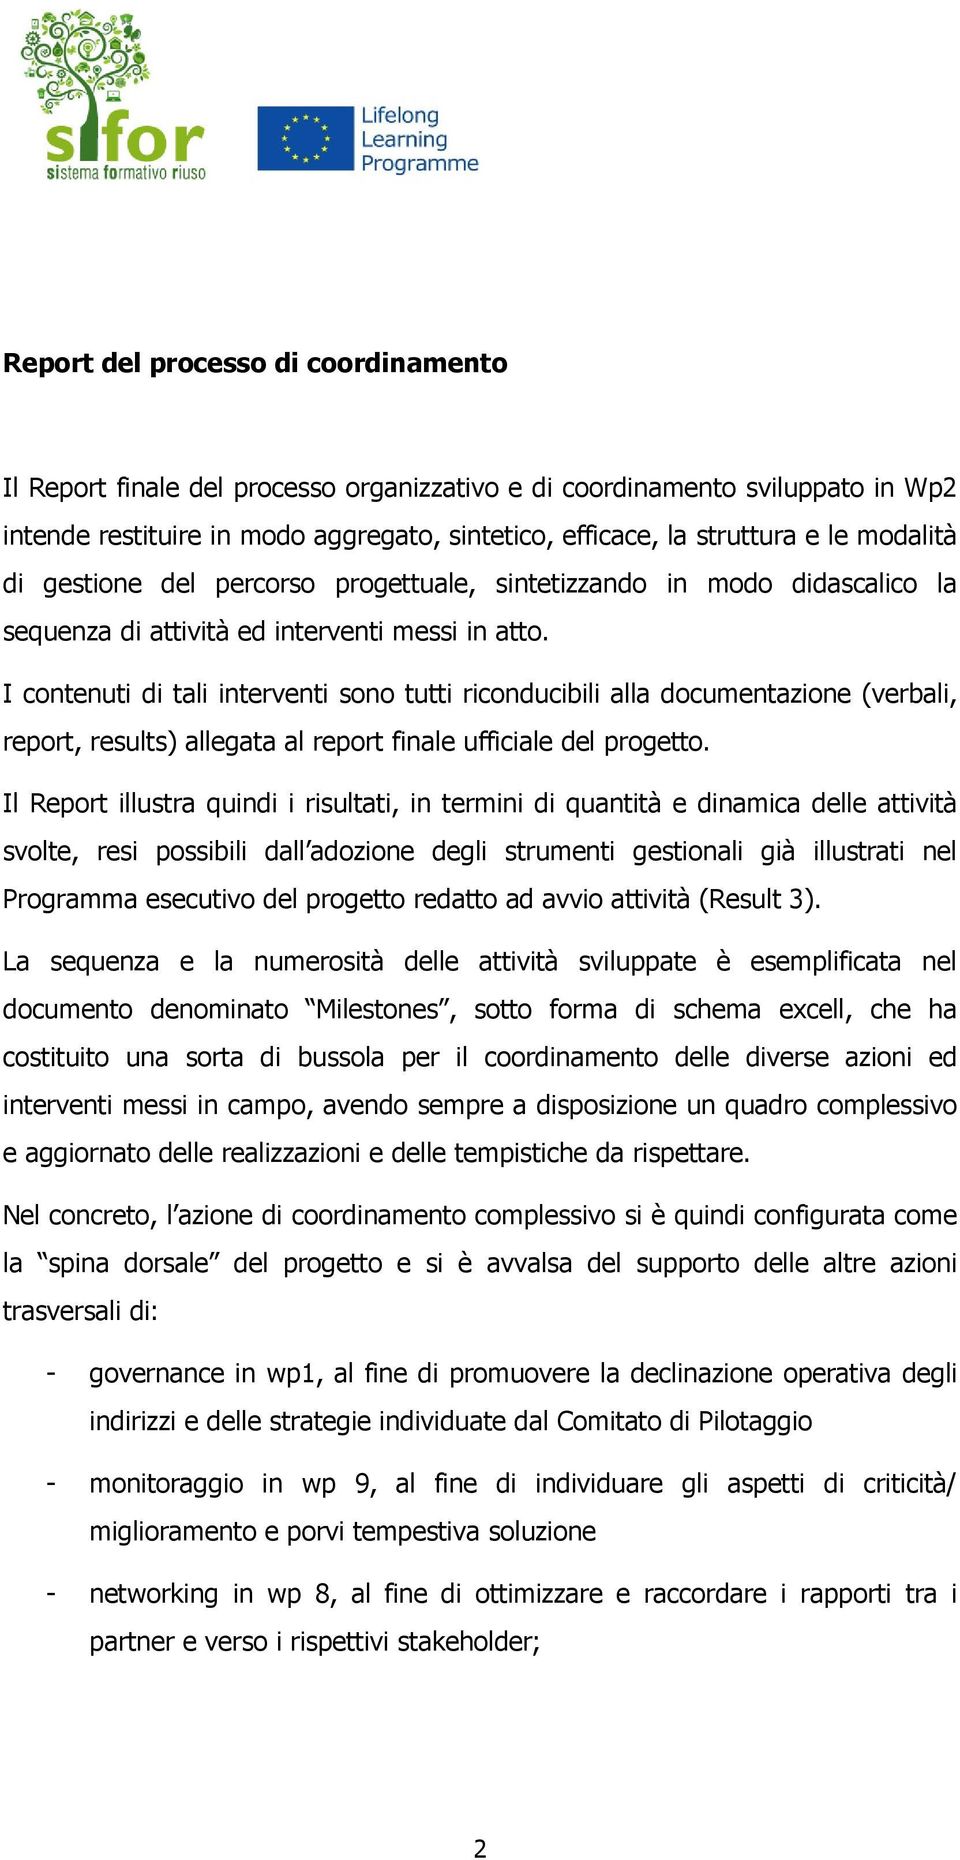 I contenuti di tali interventi sono tutti riconducibili alla documentazione (verbali, report, results) allegata al report finale ufficiale del progetto.